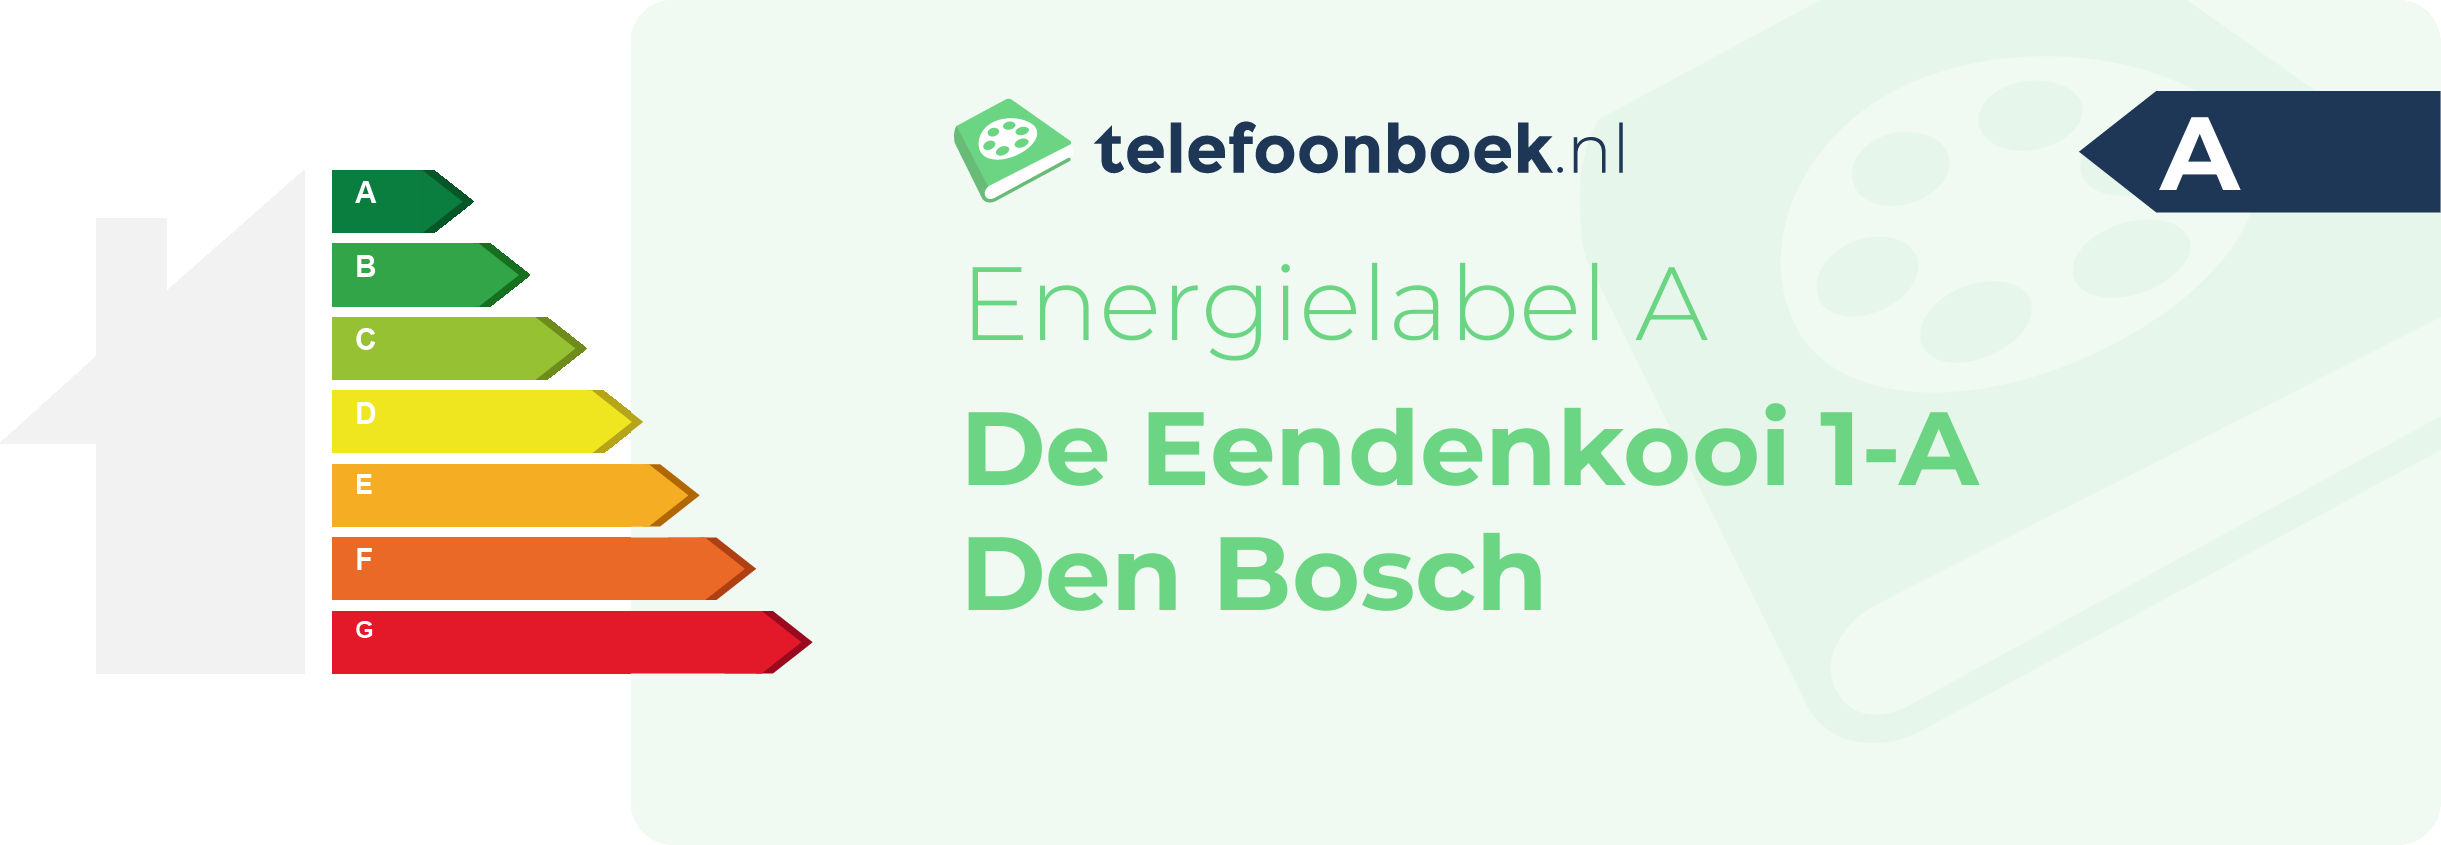 Energielabel De Eendenkooi 1-A Den Bosch